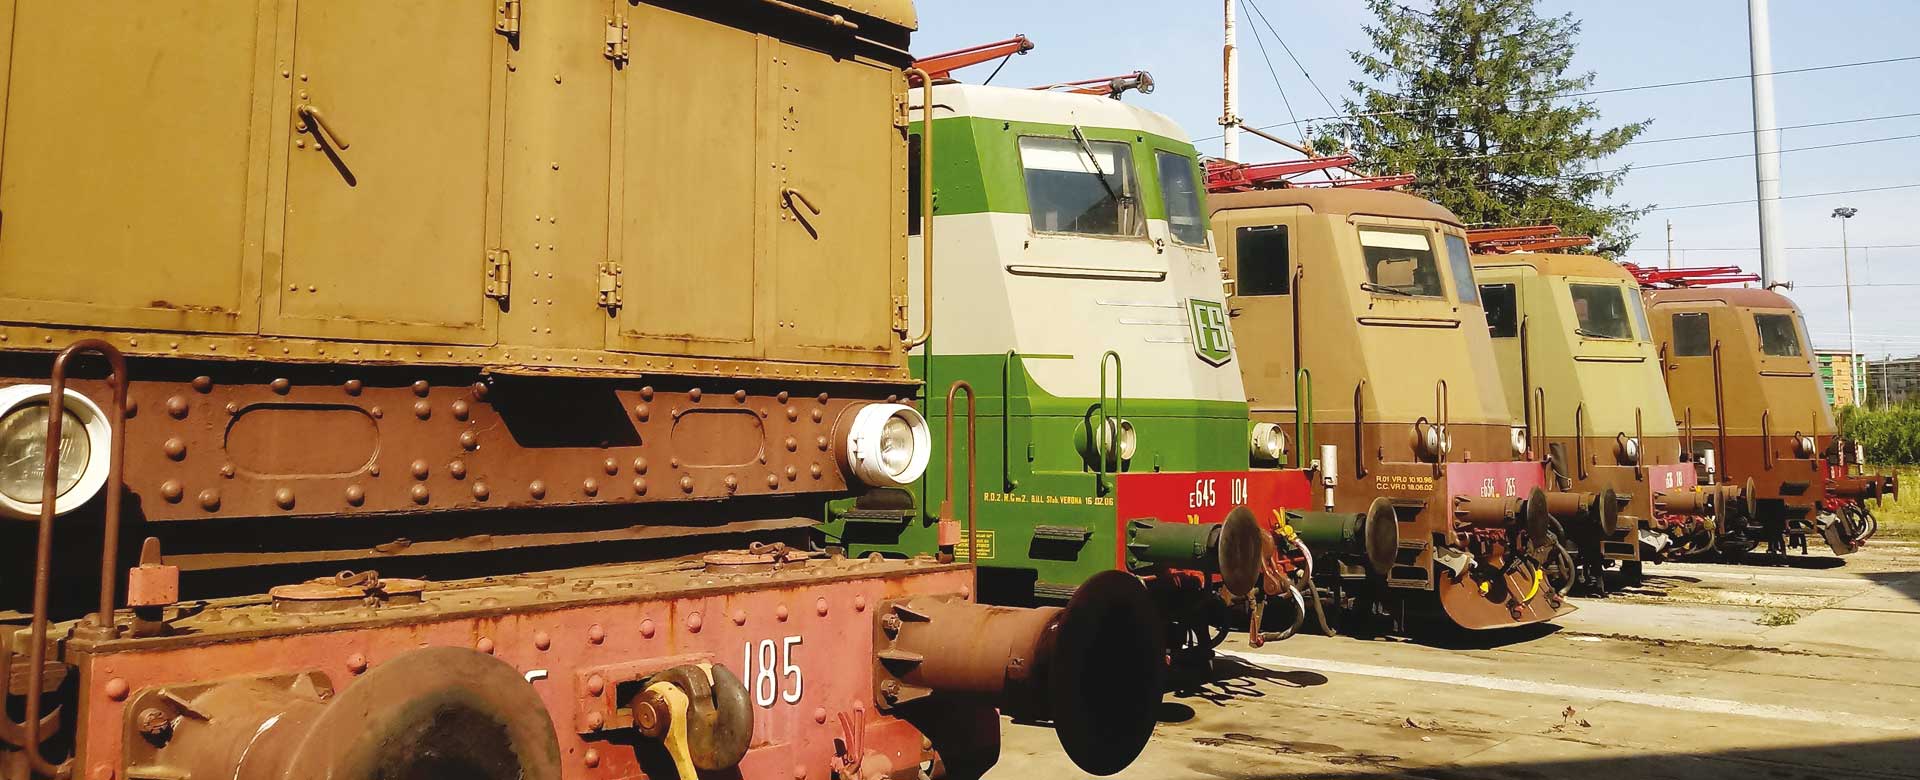 Locomotive elettriche nel Deposito officina rotabili storici di La Spezia Migliarina